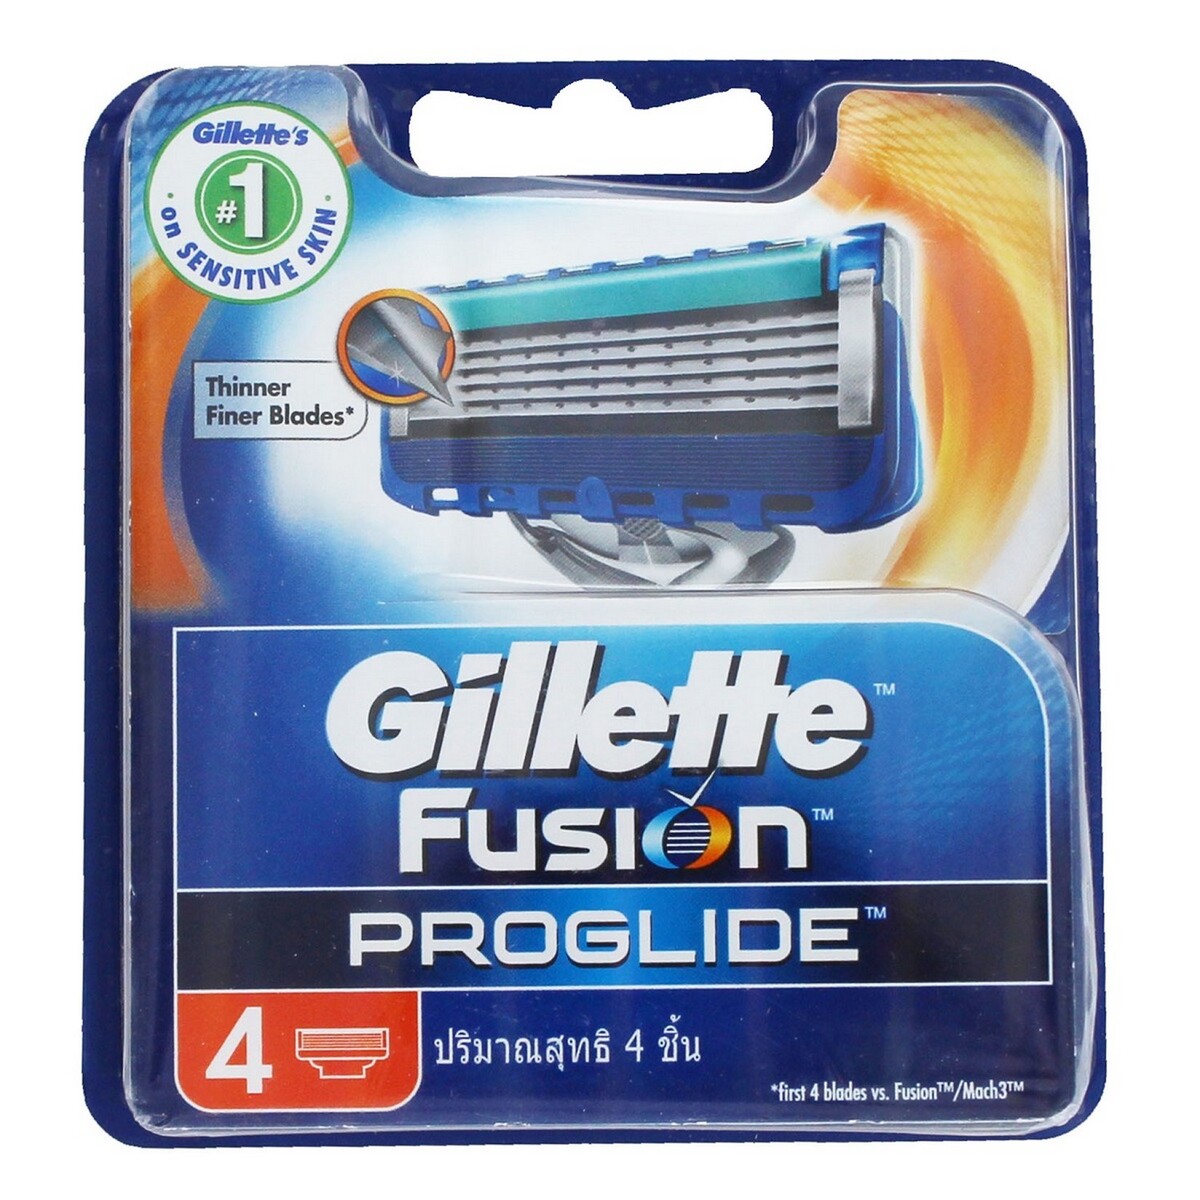 Gillette Cartrdge Fusion Proglide 4's